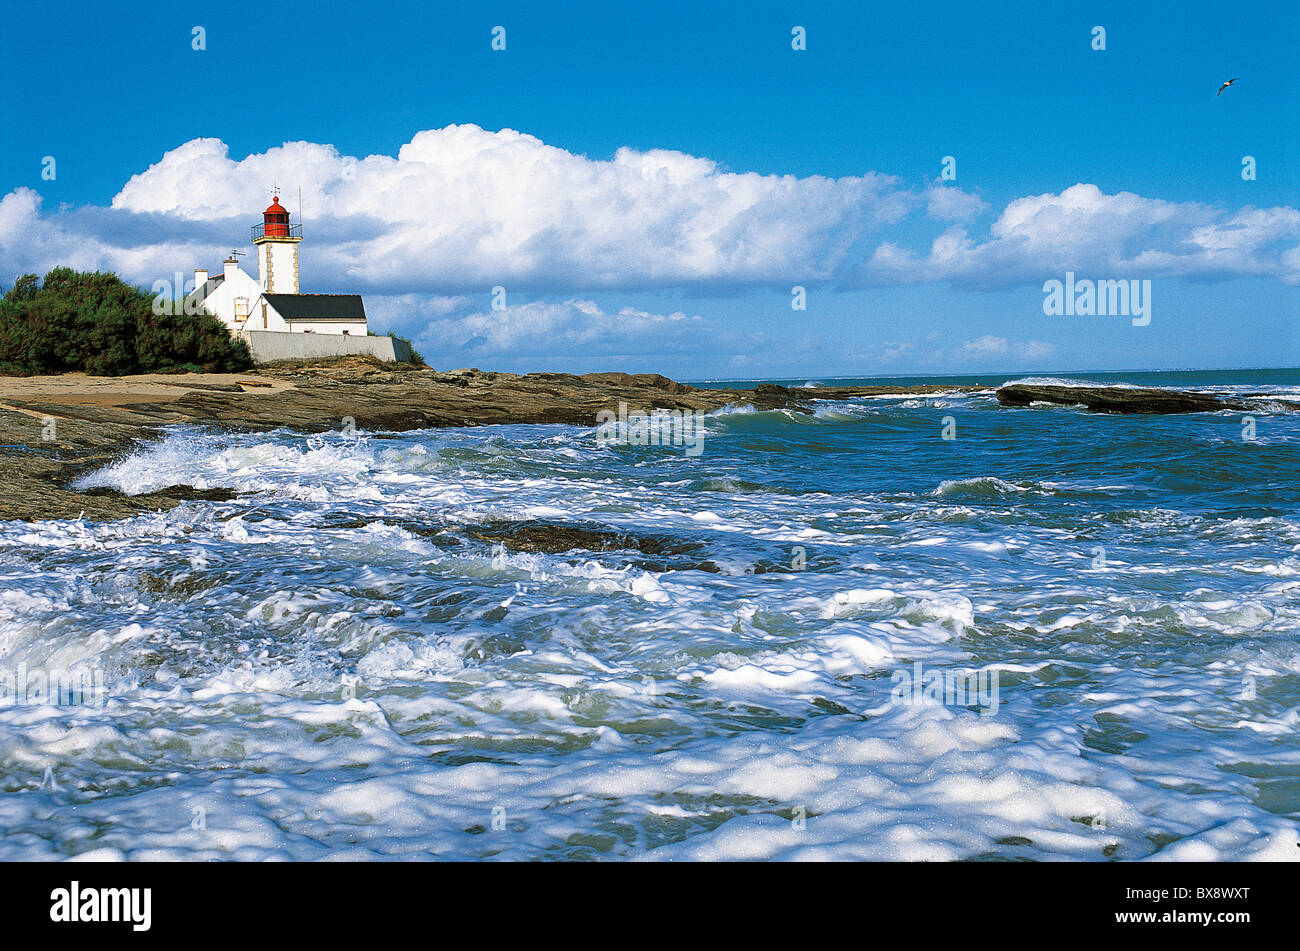 France, Brittany, Morbihan, Ile de Groix, Pointe des Chats Stock Photo